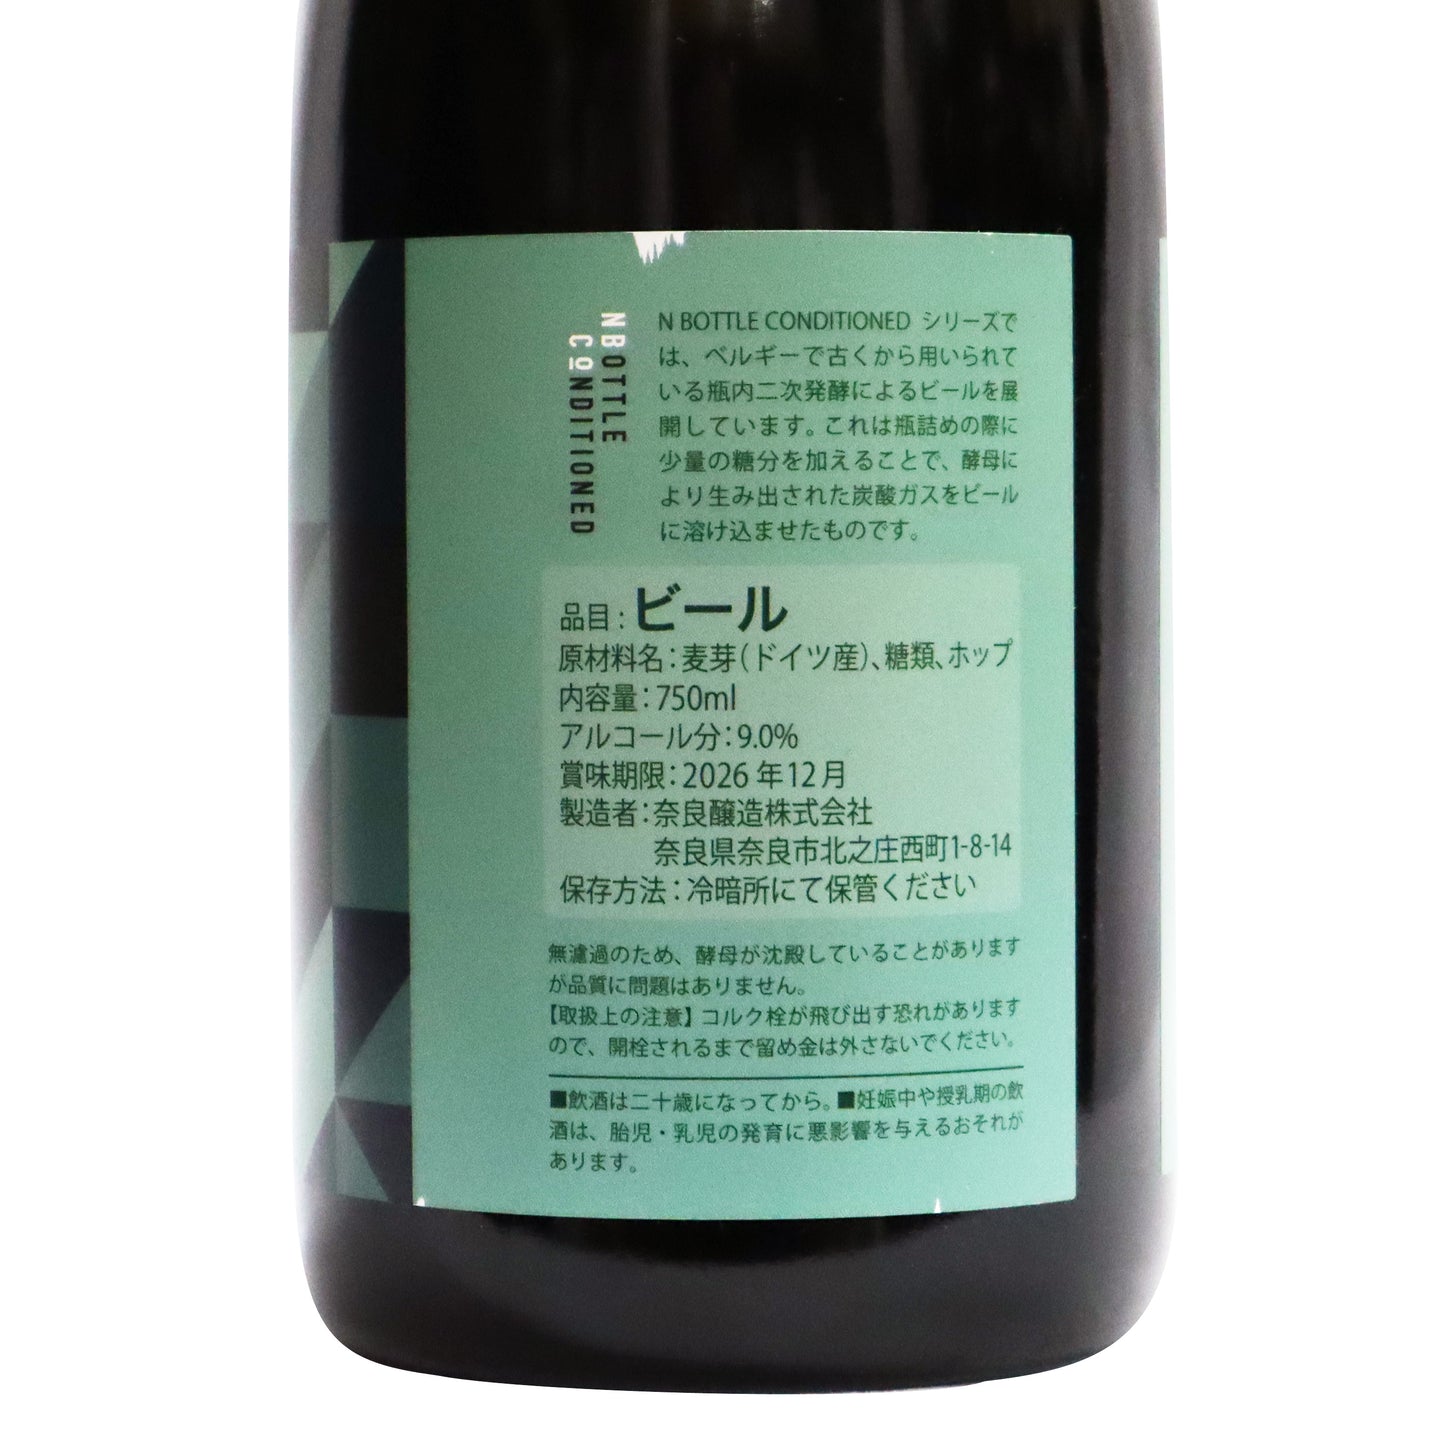 【奈良 INTEGRAL】N BOTTLE CONDITIONED  750ml/奈良醸造